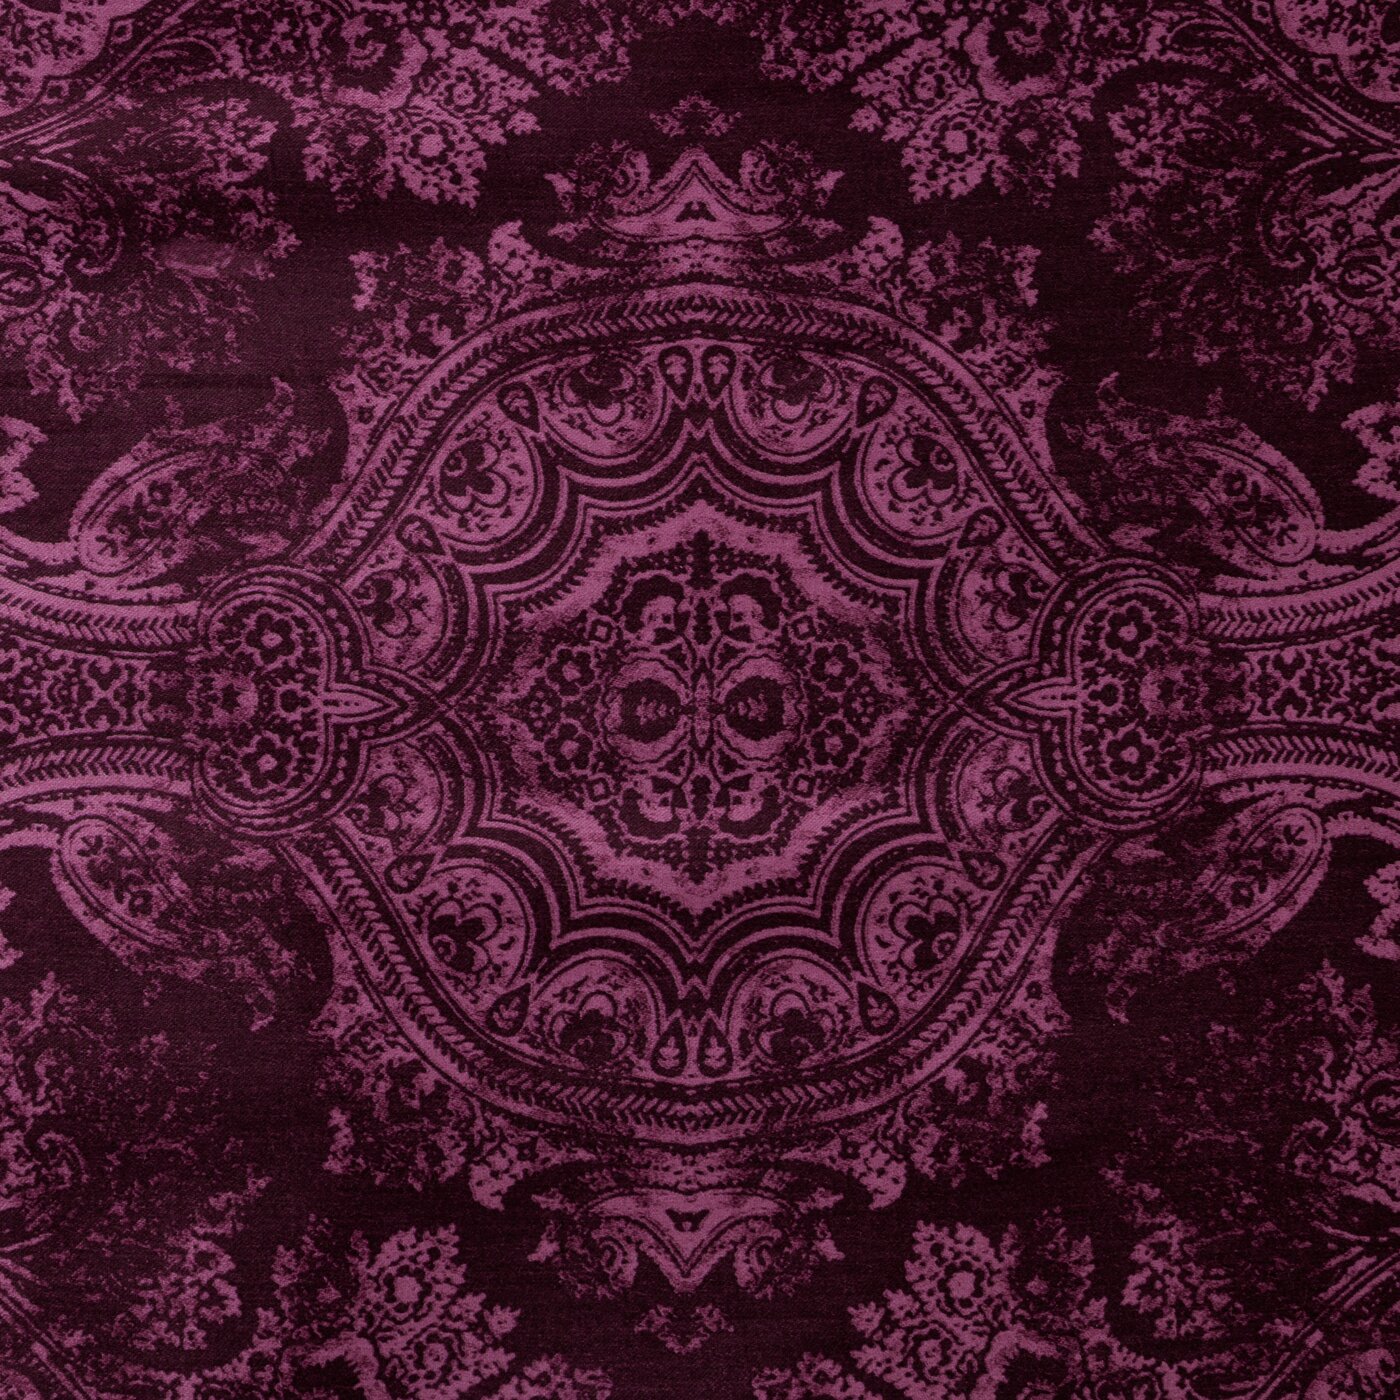 Lenjerie din bumbac macosatin cu model ornamental violet TERRA COLLECTION AVINION 5 Perdele de Poveste